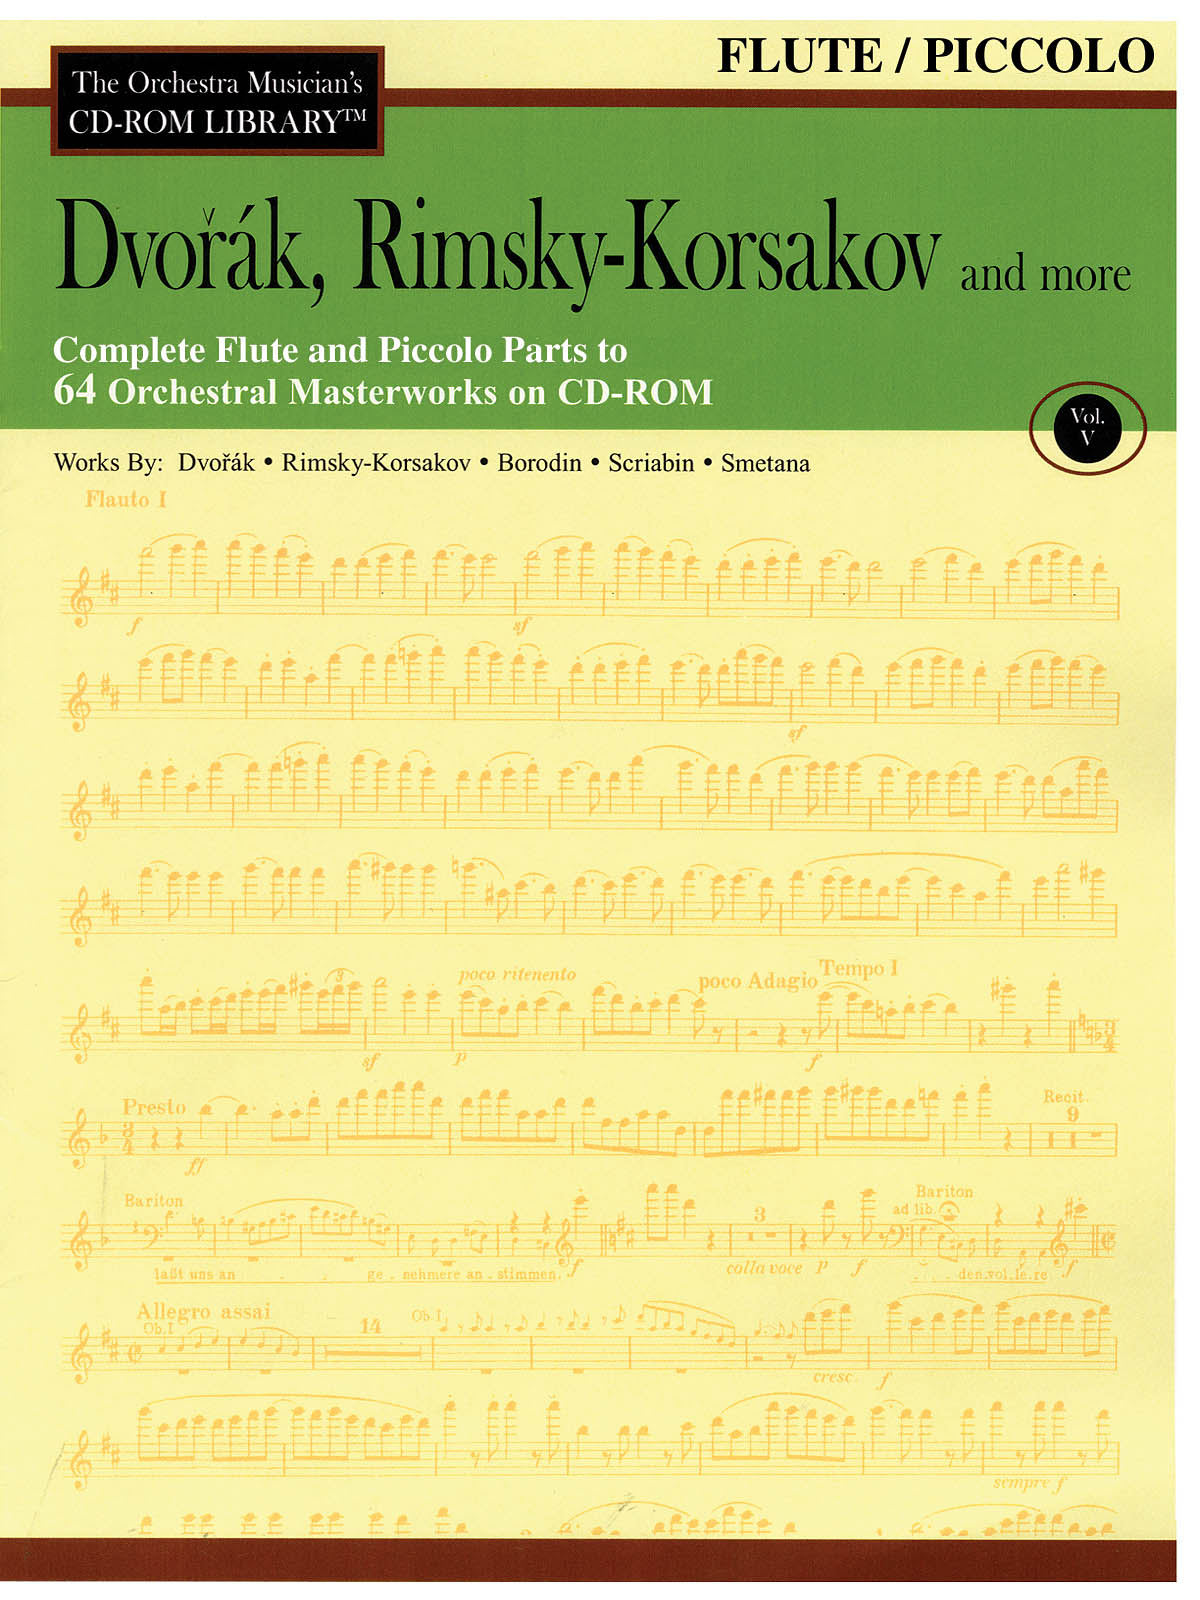 Dvorak, Rimsky-Korsakov and More – Volume 5(The Orchestra Musician’s CD-ROM Library – Flute)